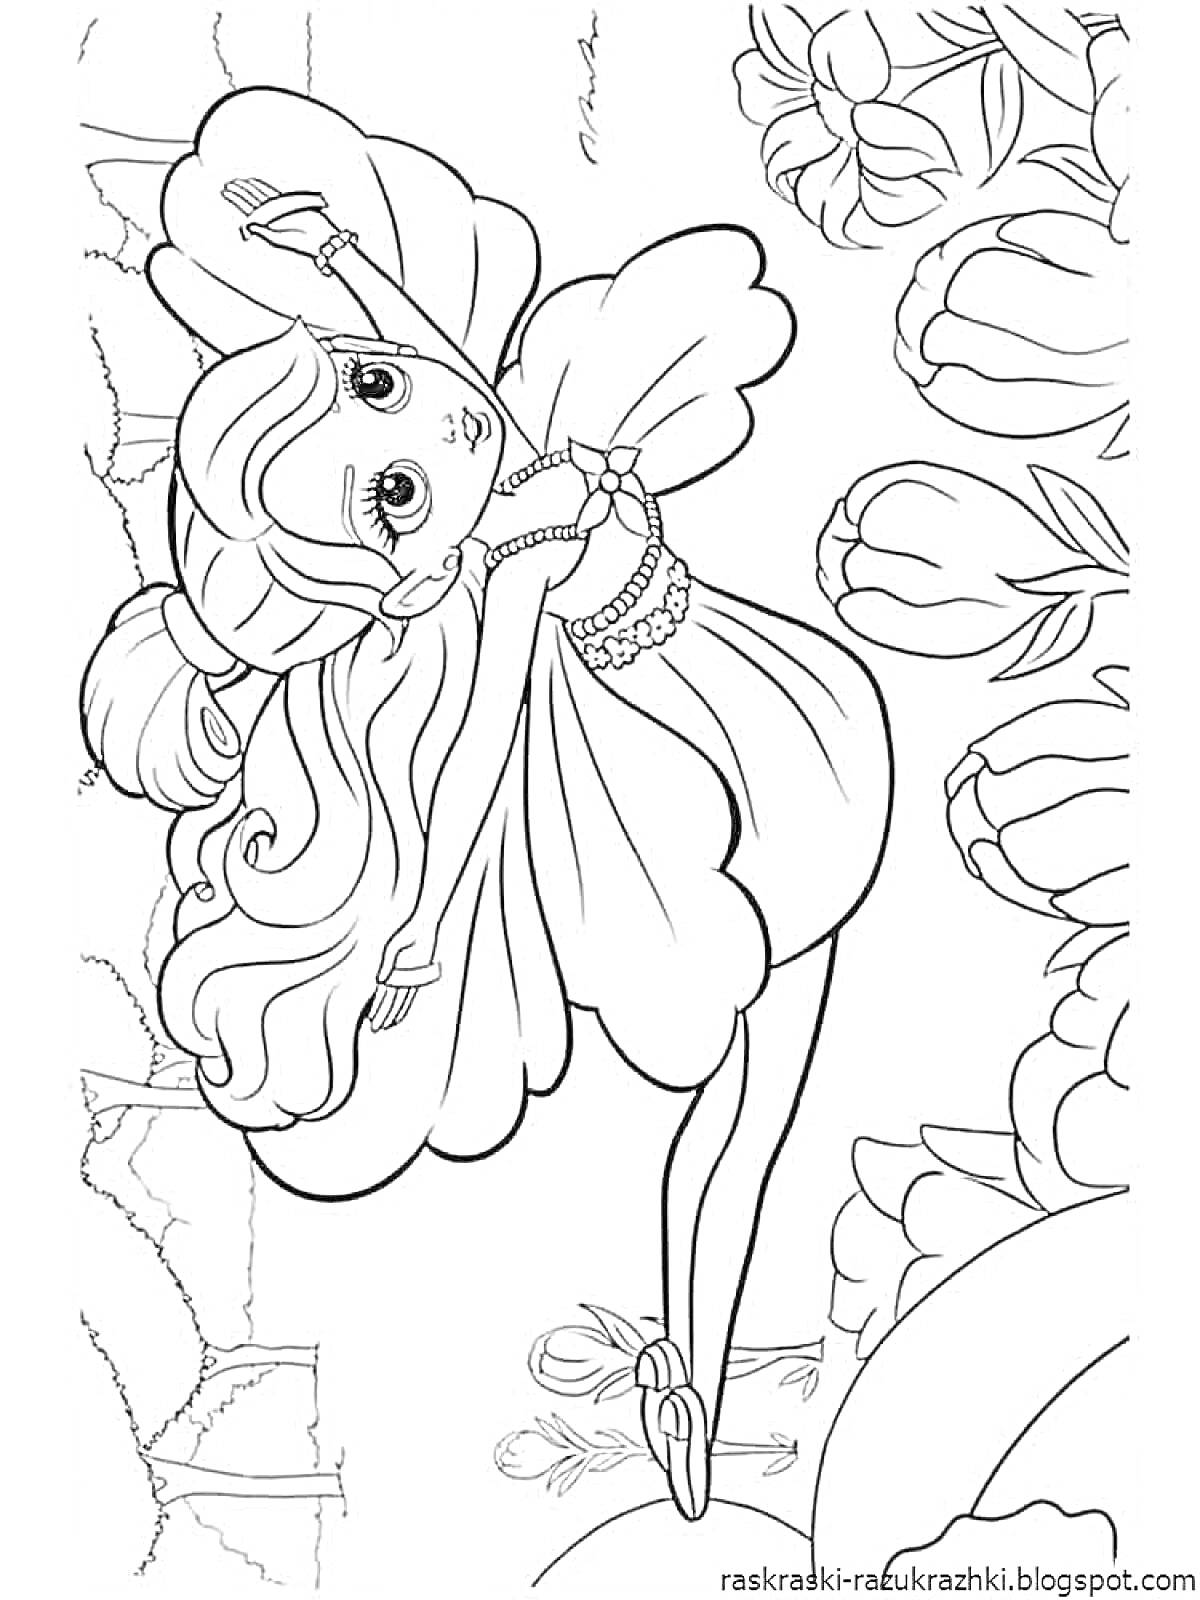 Раскраска Фея с длинными волосами в полете с цветами и листьями на фоне